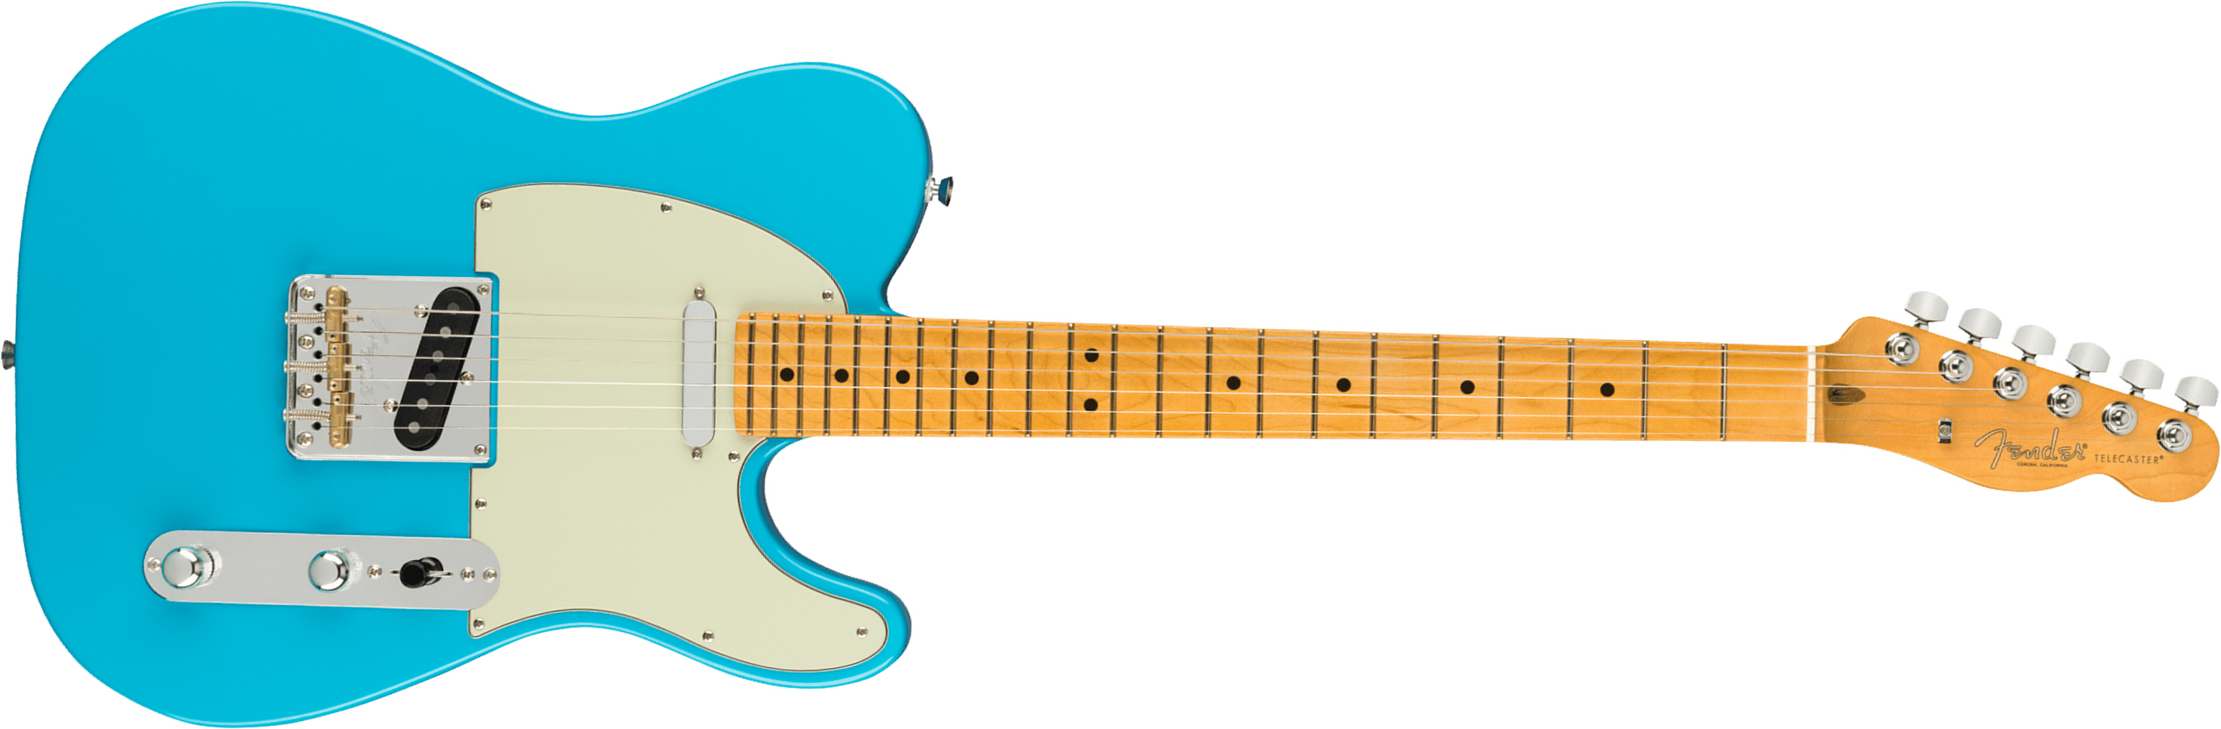 Fender Tele American Professional Ii Usa Mn - Miami Blue - E-Gitarre in Teleform - Main picture